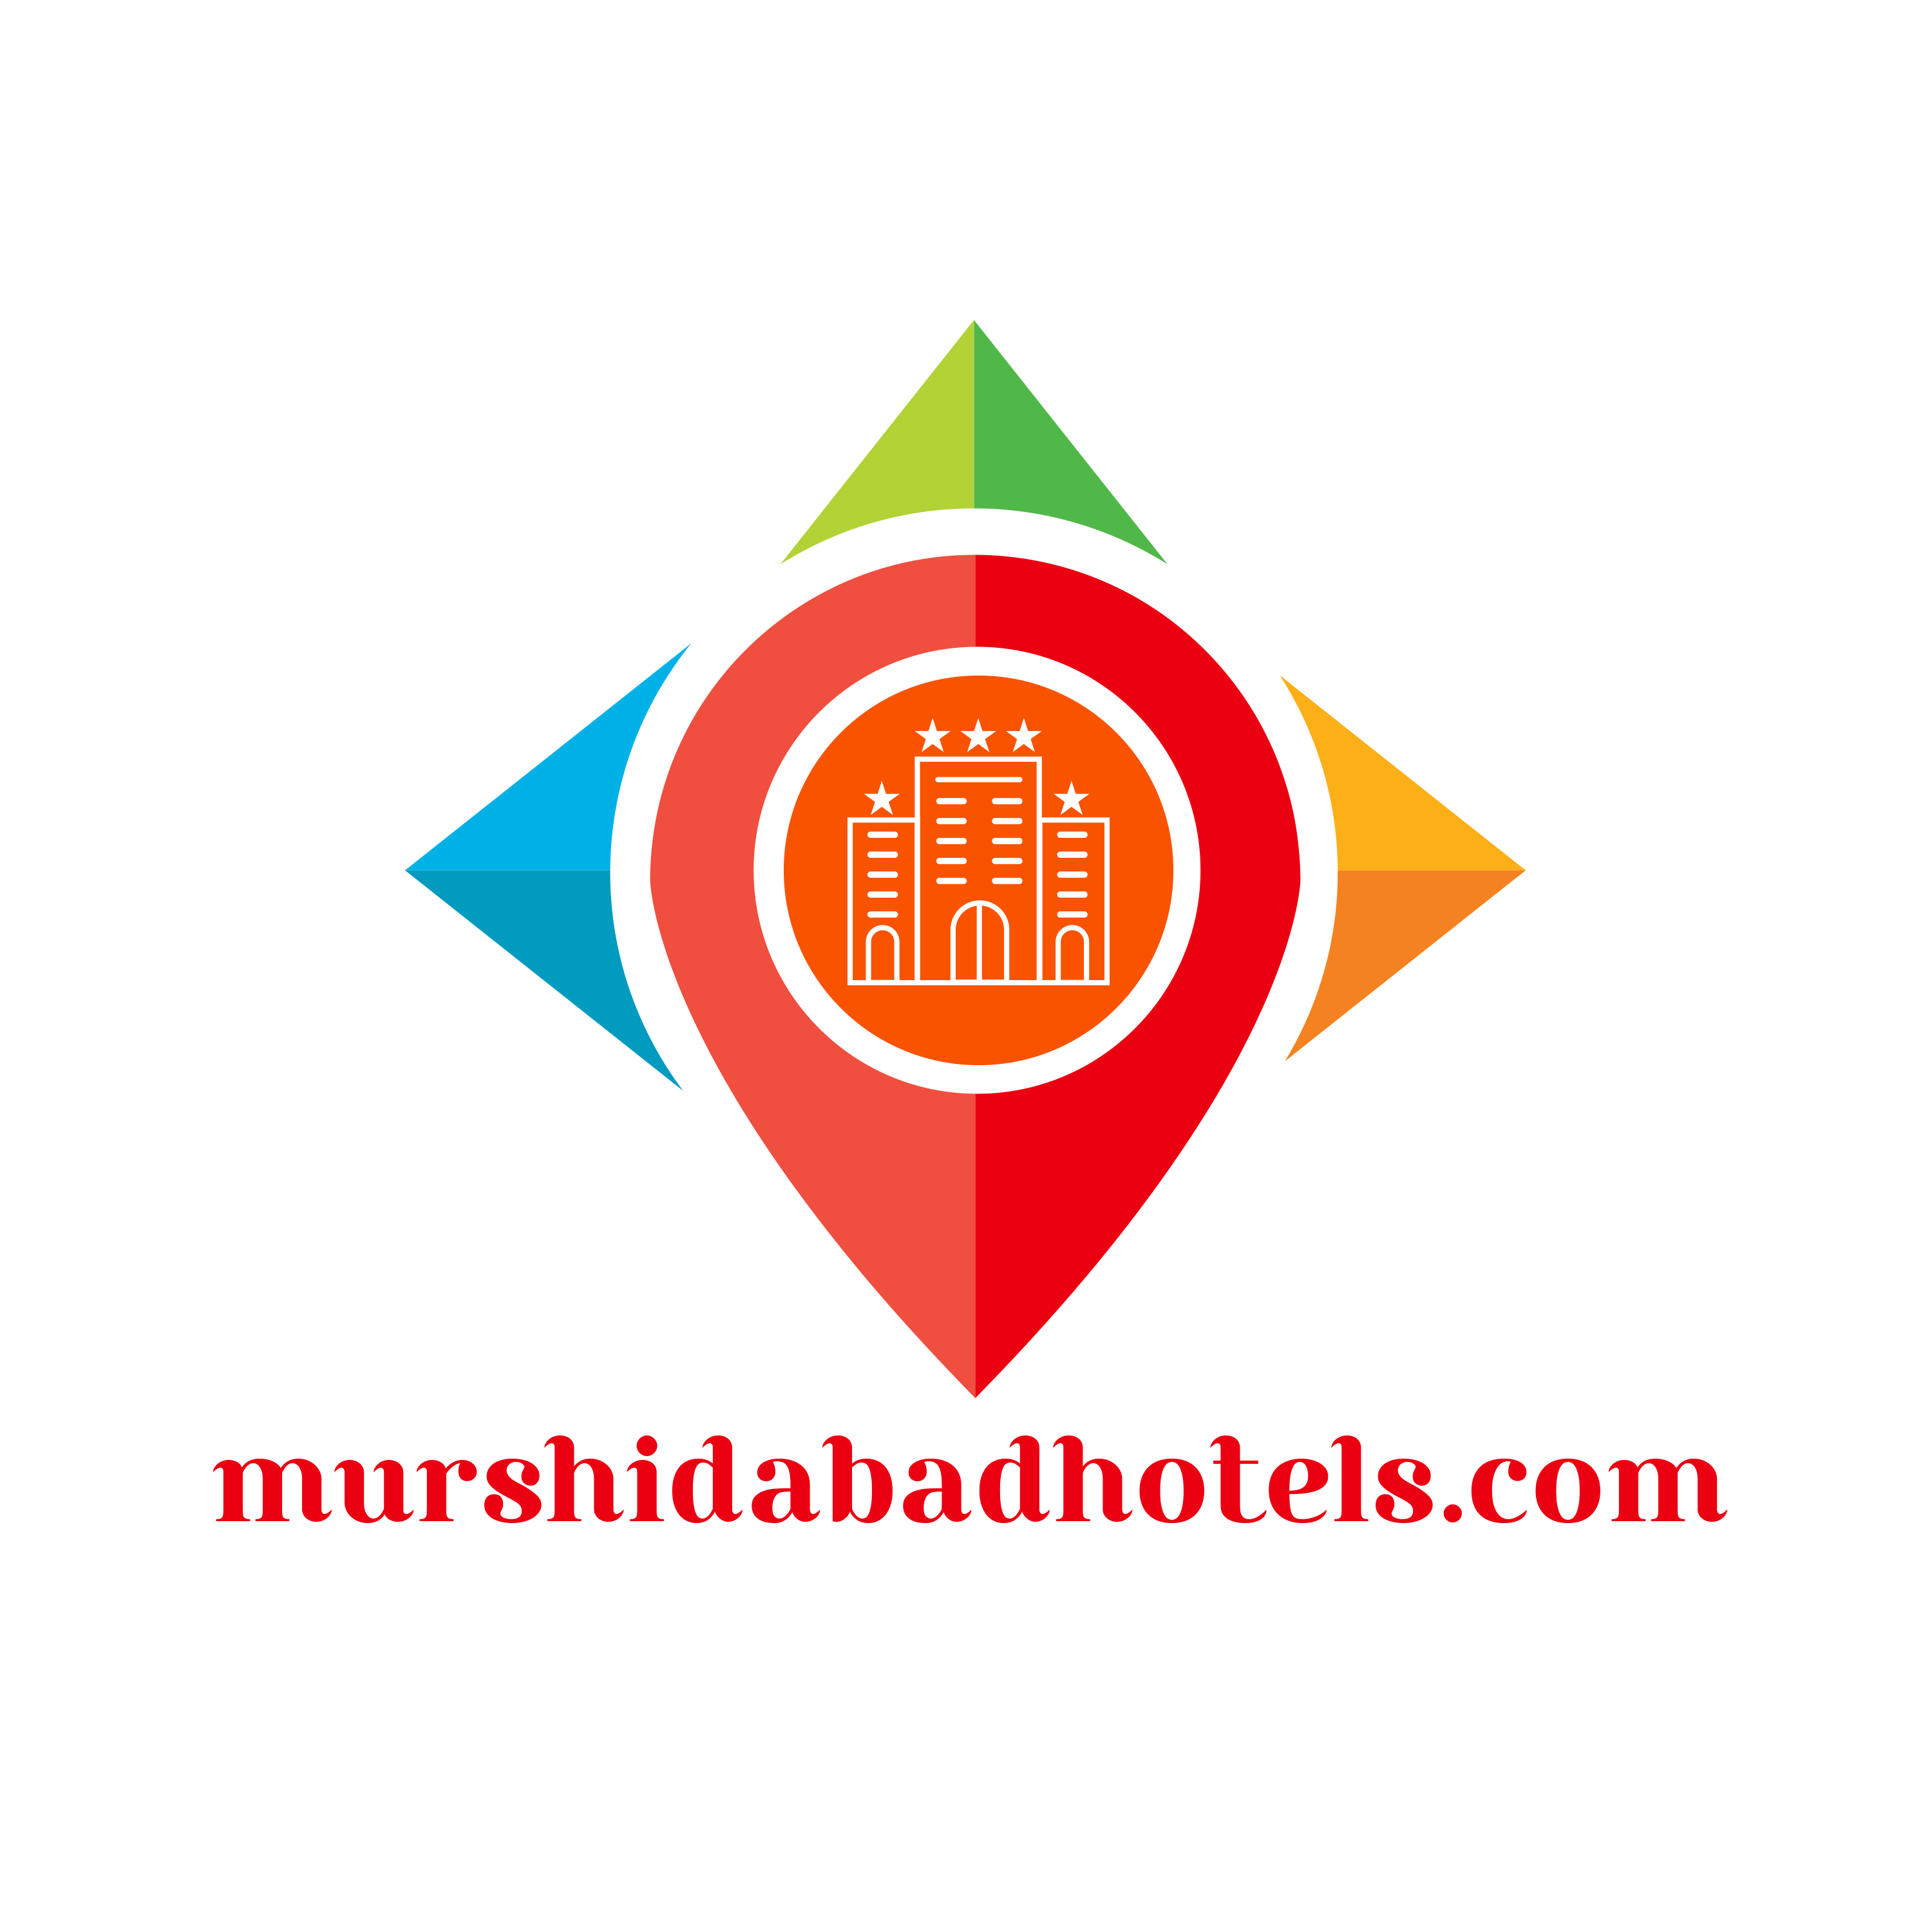 murshidabad tourism hotel